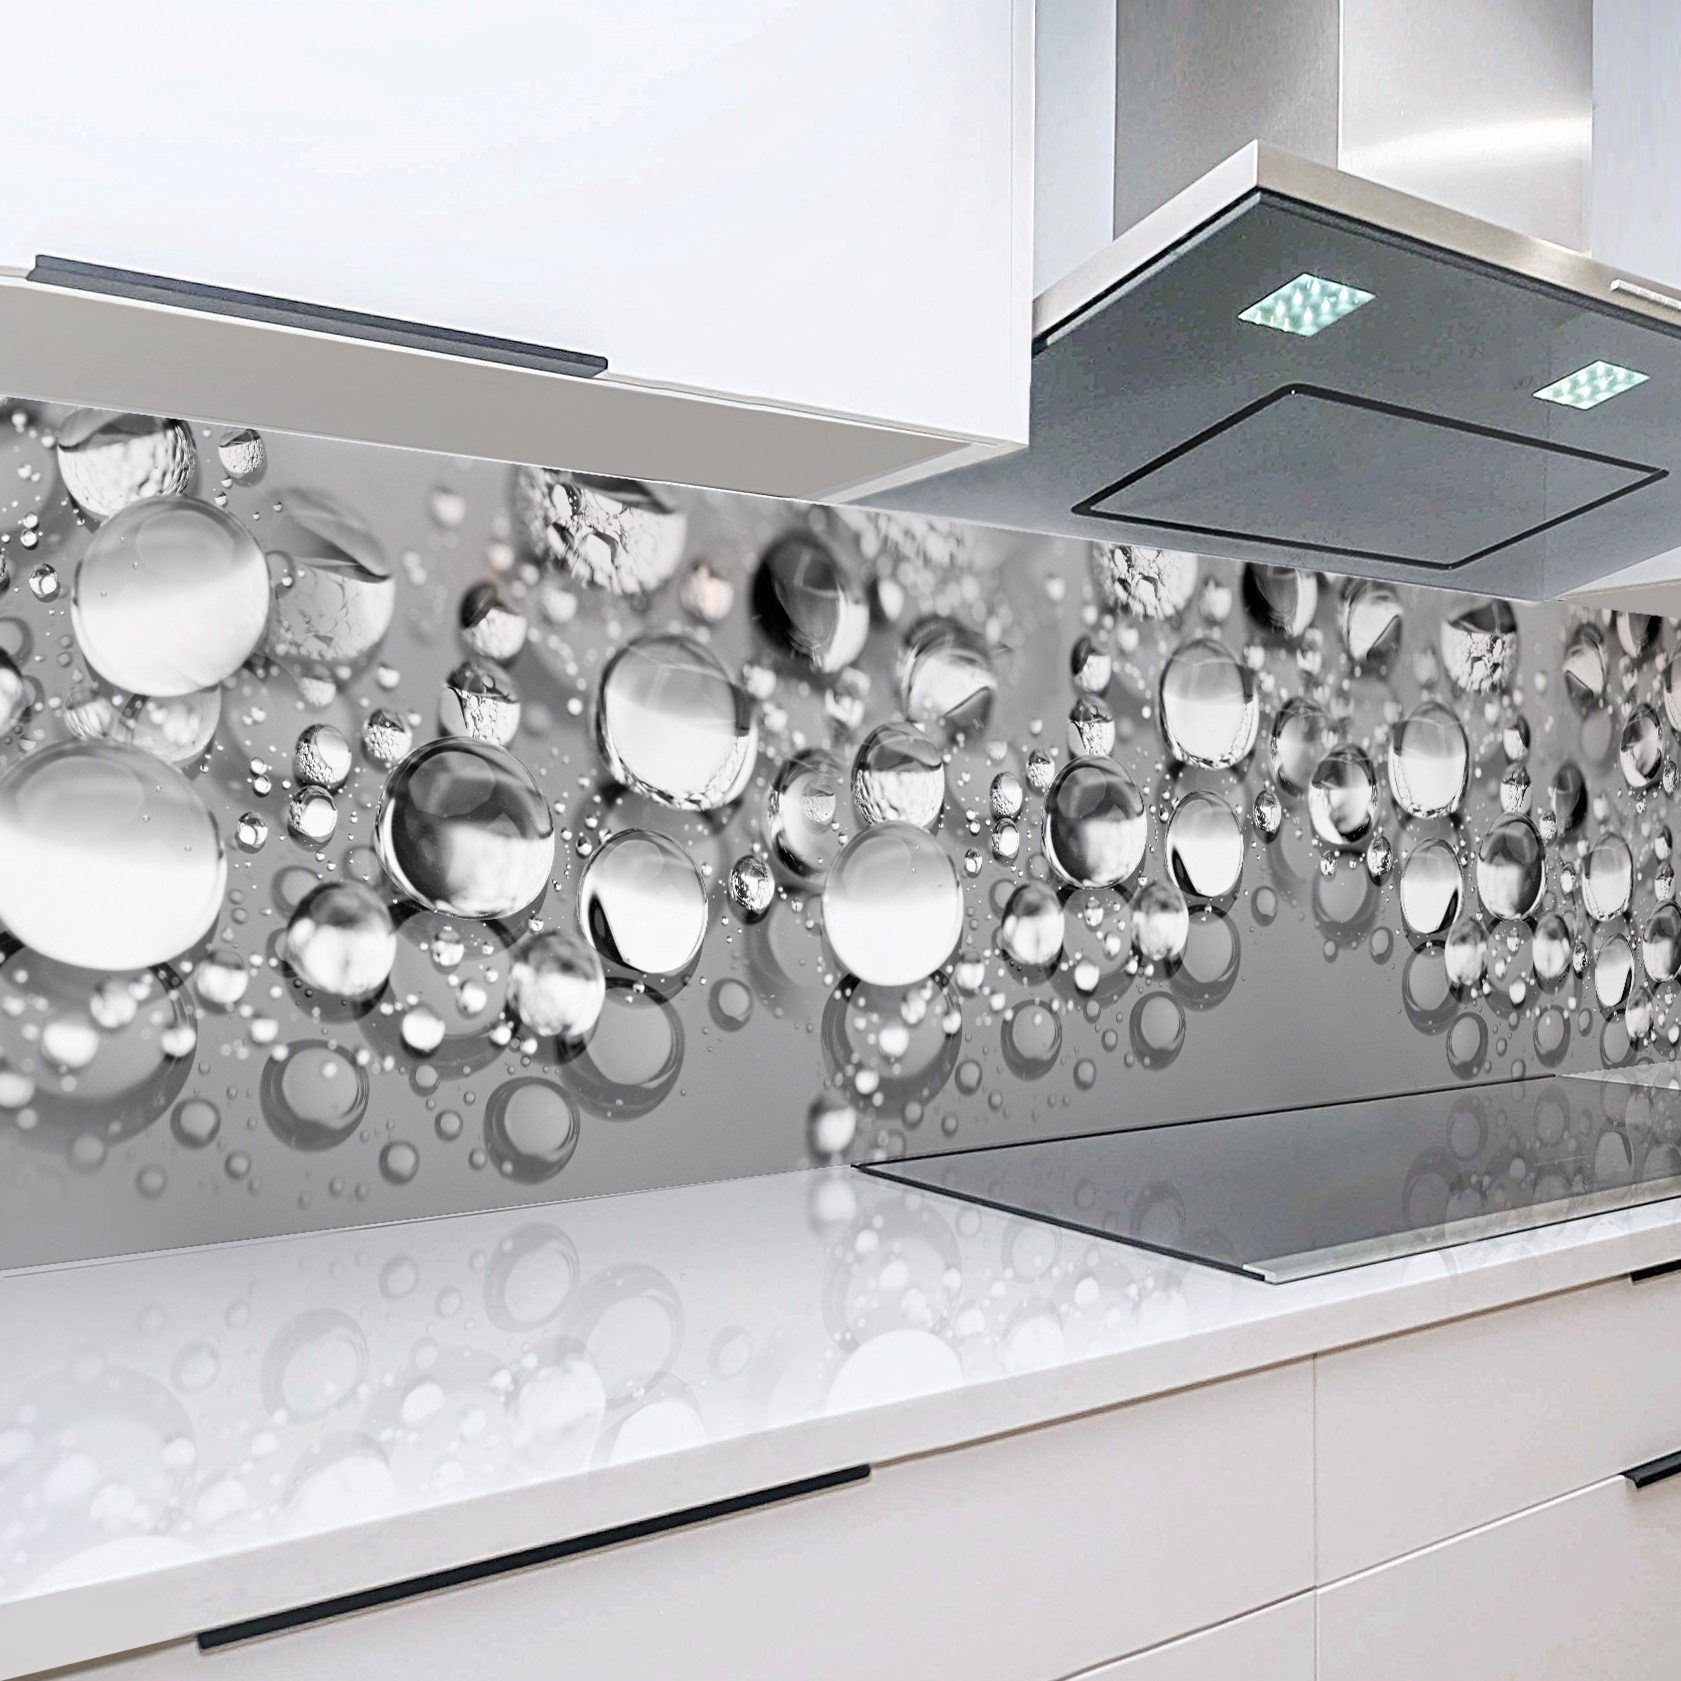 Rodnik Küchenrückwand Tautropfen, ABS-Kunststoff Platte Monolith in DELUXE Qualität mit Direktdruck